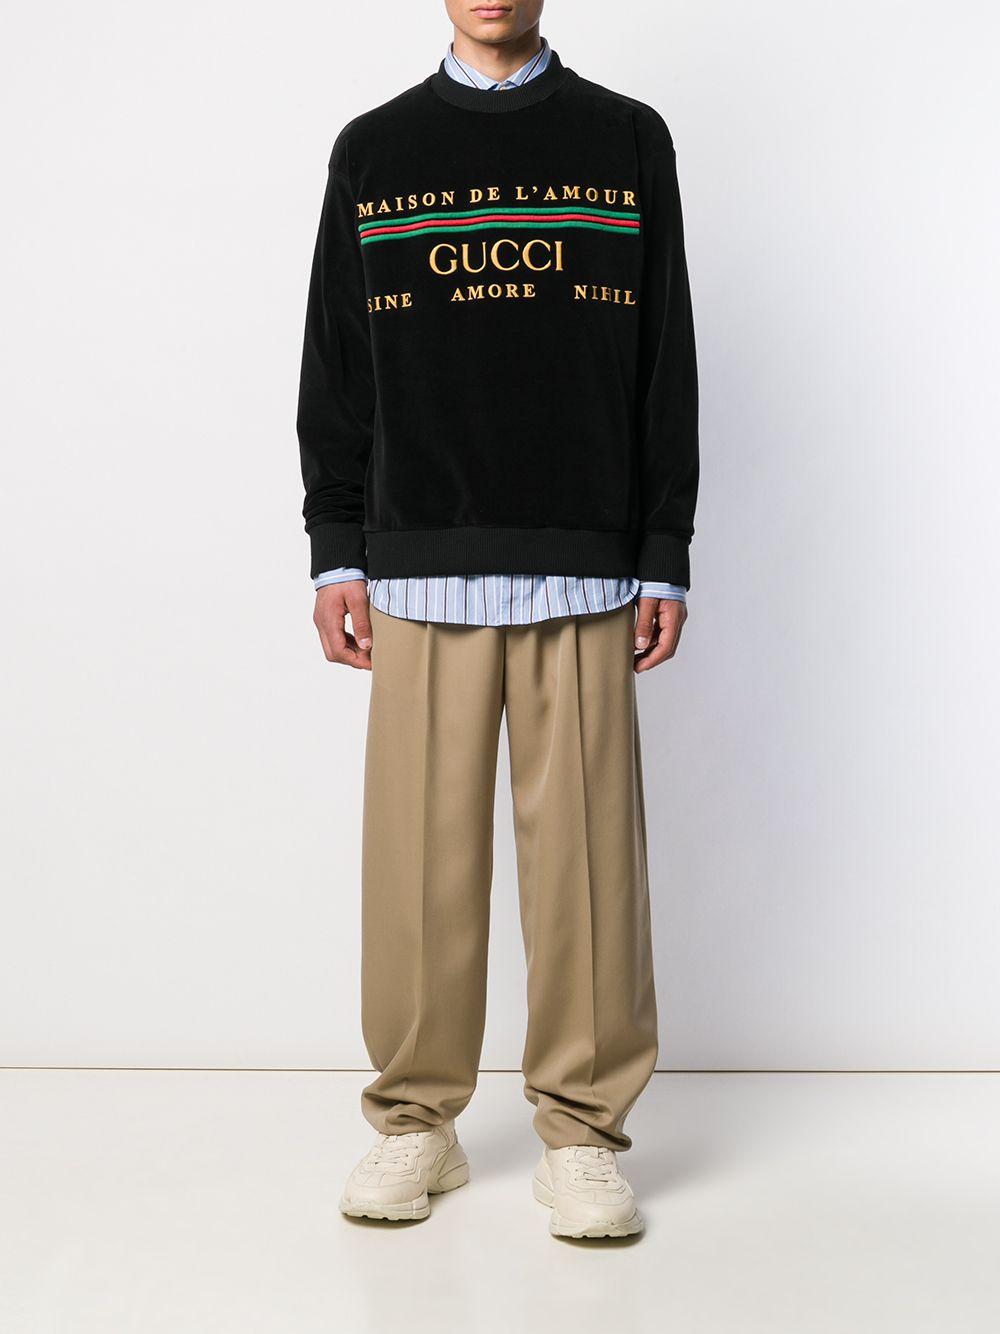 Gucci Maison De L'amour Velvet Sweatshirt in Black for Men | Lyst